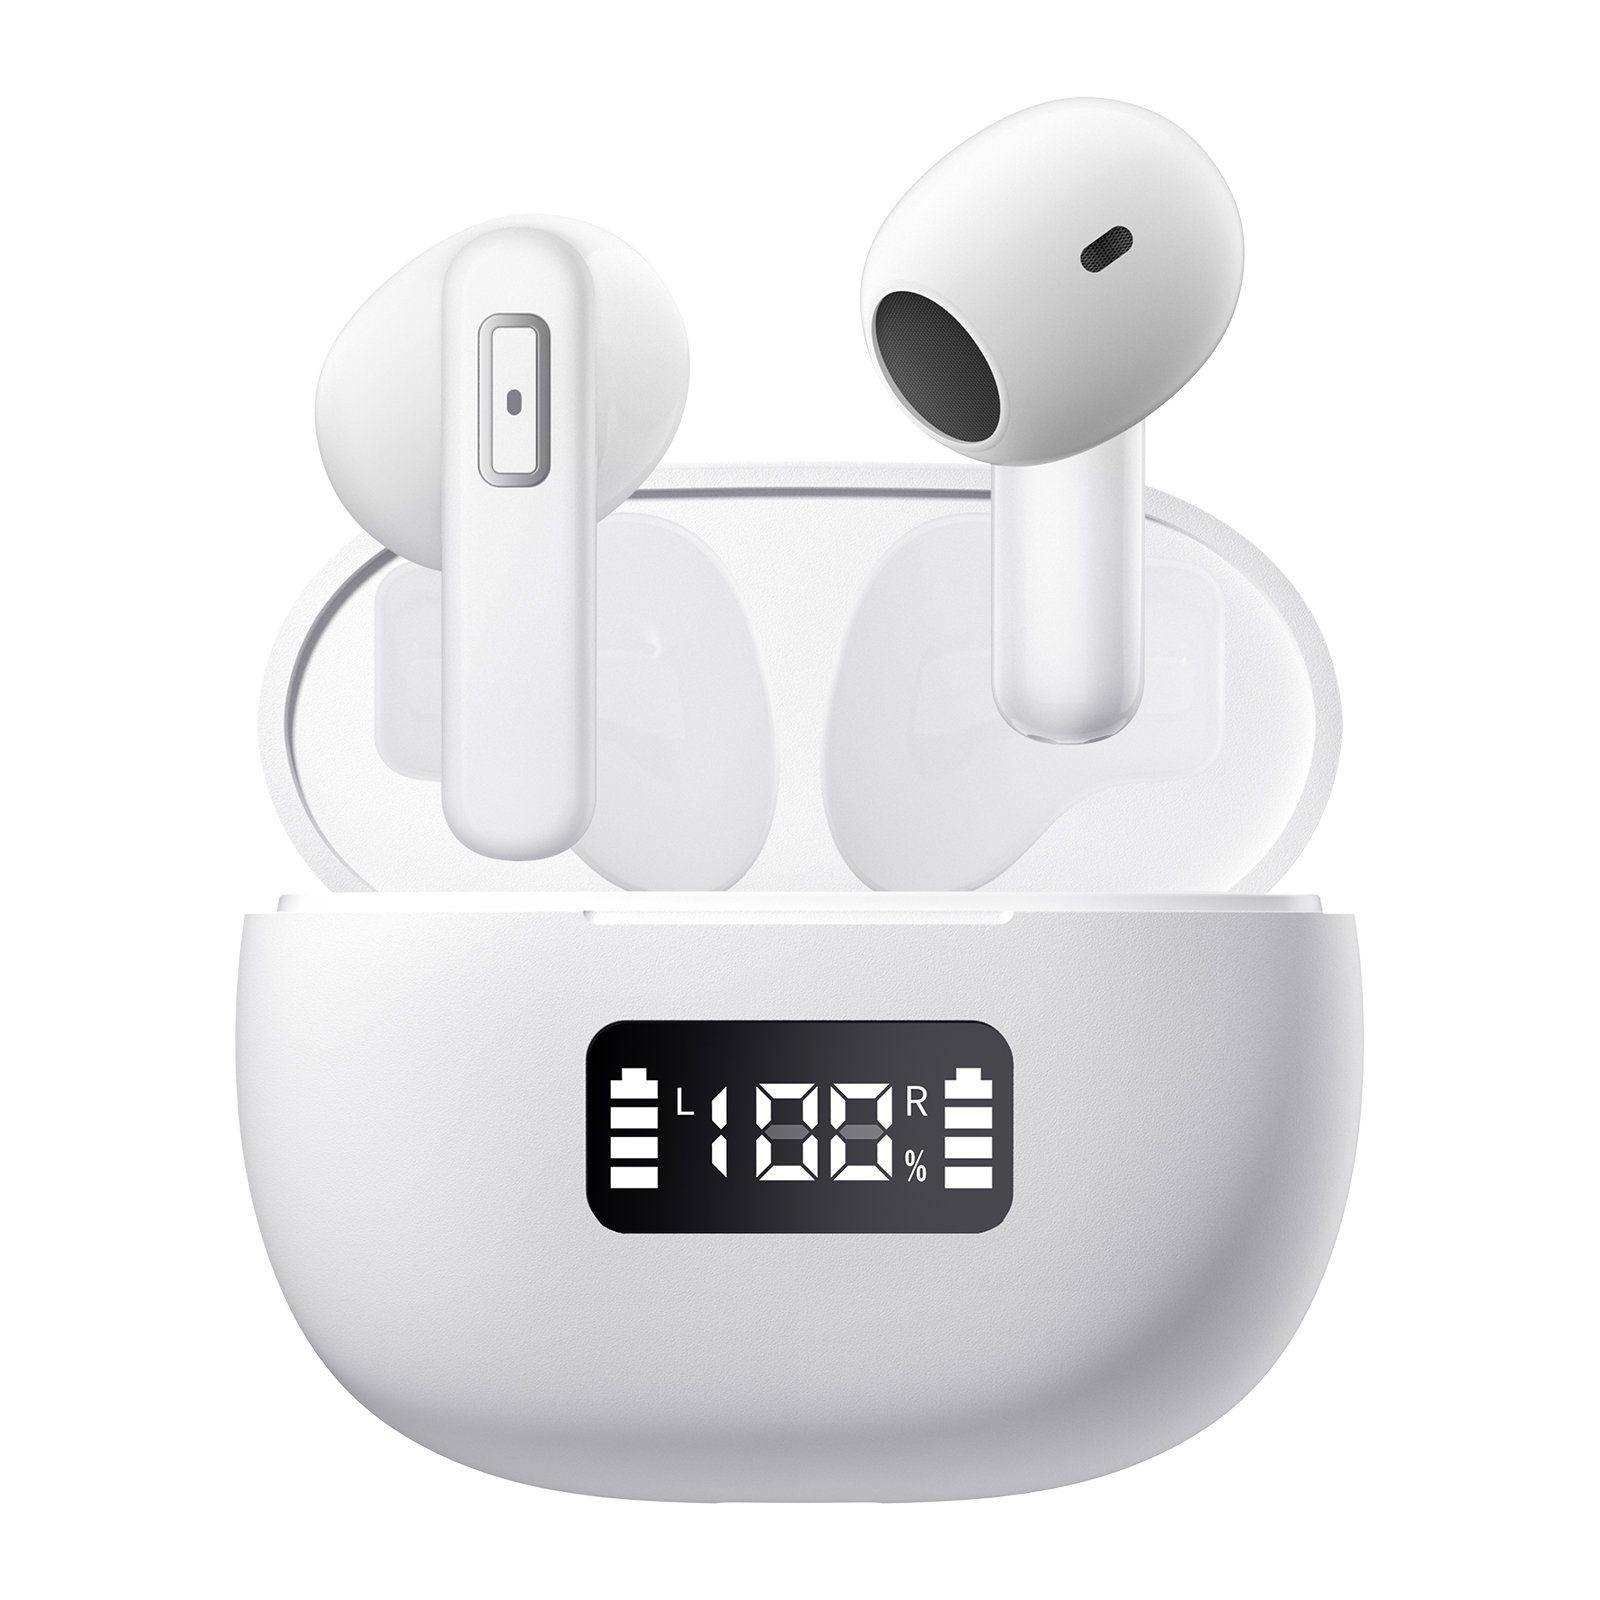 5.3 kompatibel mit Bluetooth (ultraleichte Weiß mit Geräuschunterdrückung Kabellos Sound, In-Ear-Kopfhörer Android/iPhone) Anrufe, In-Ear-Kopfhörer, Kopfhörer,Kopfhörer Mutoy Premium für ENC-Mikrofon Bluetooth